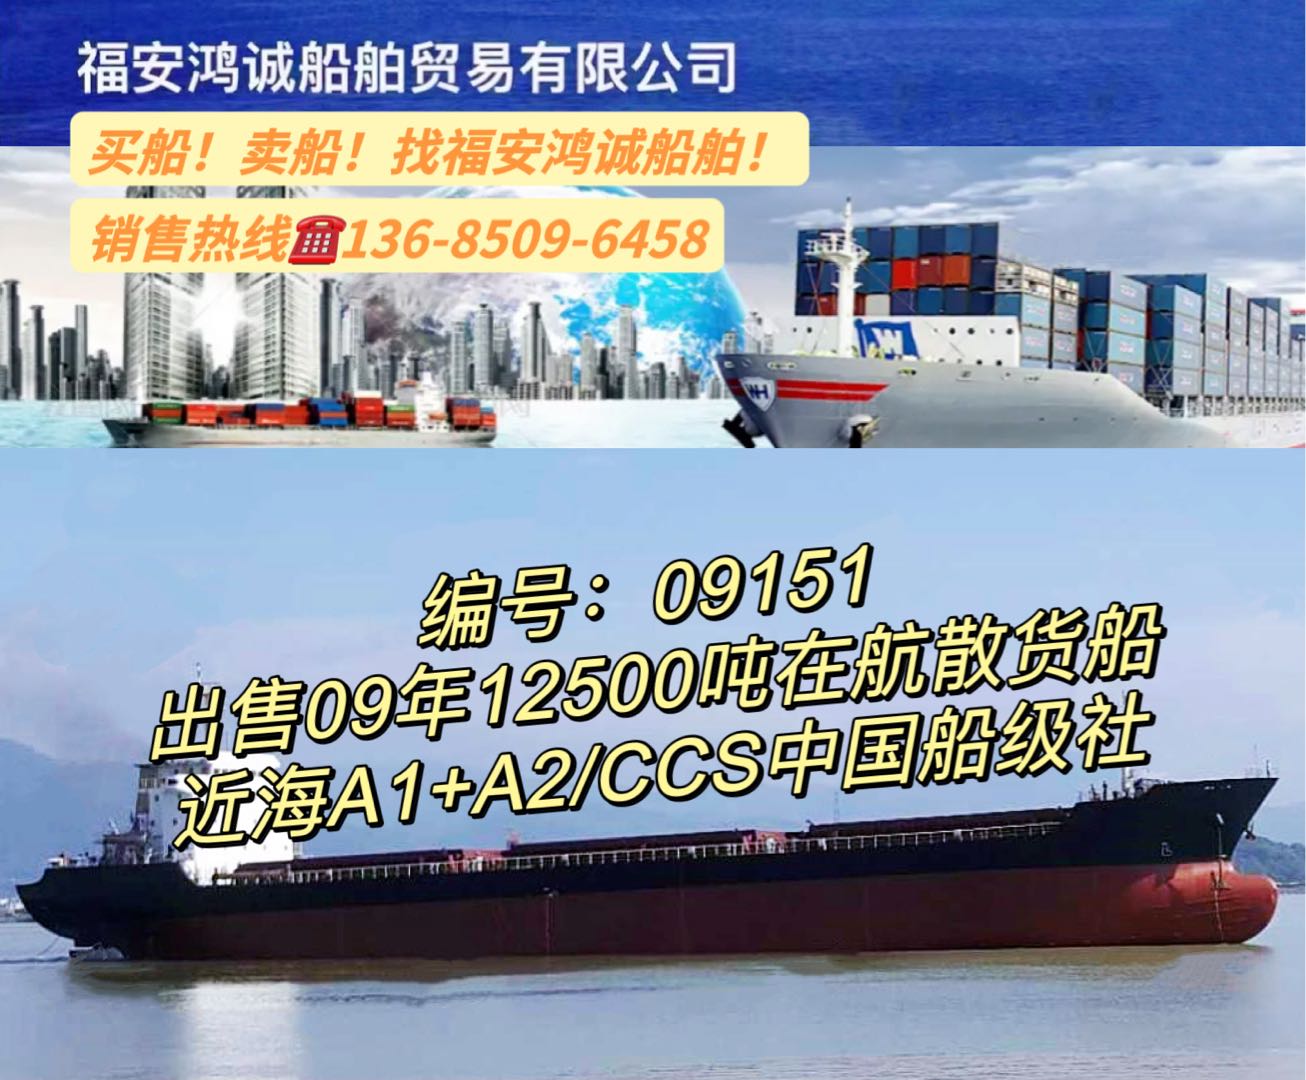 出售09年12500吨在航散货船 福建 宁德市-2.jpg